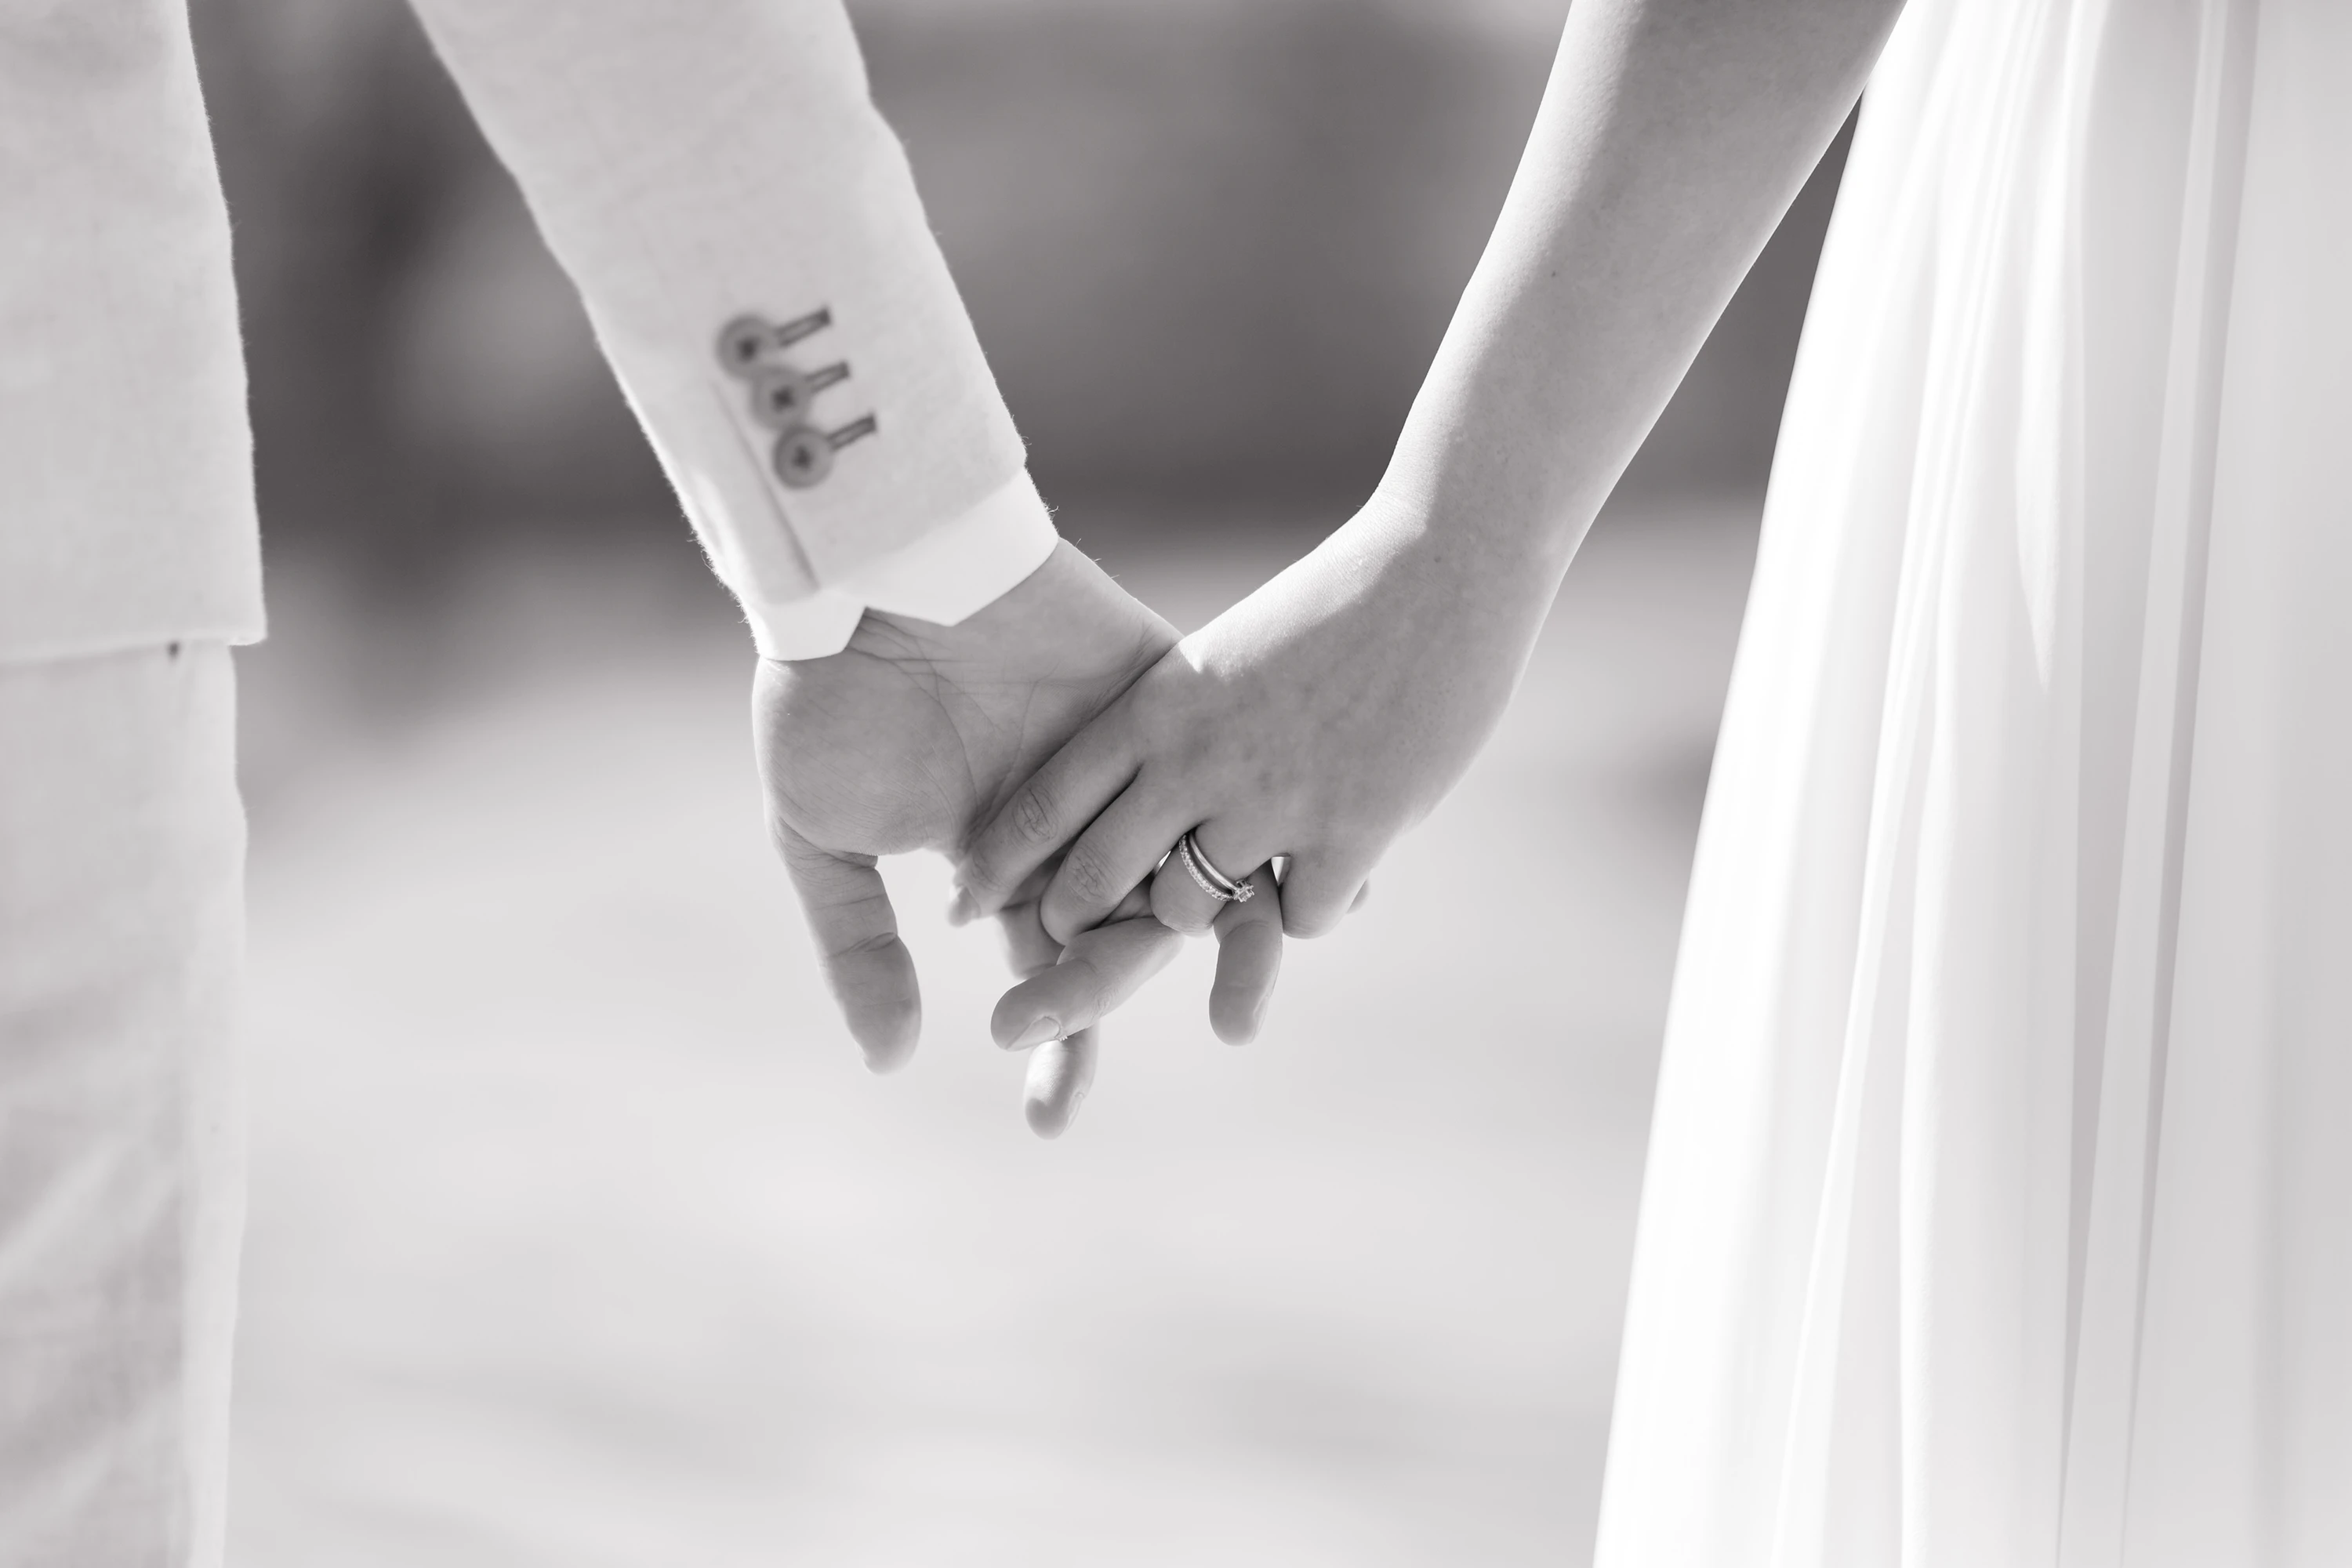 Schwarz-Weiß Aufnahme wie das Brautpaar Händchen hält, Nahaufnahme, man erkennt nur die Hände